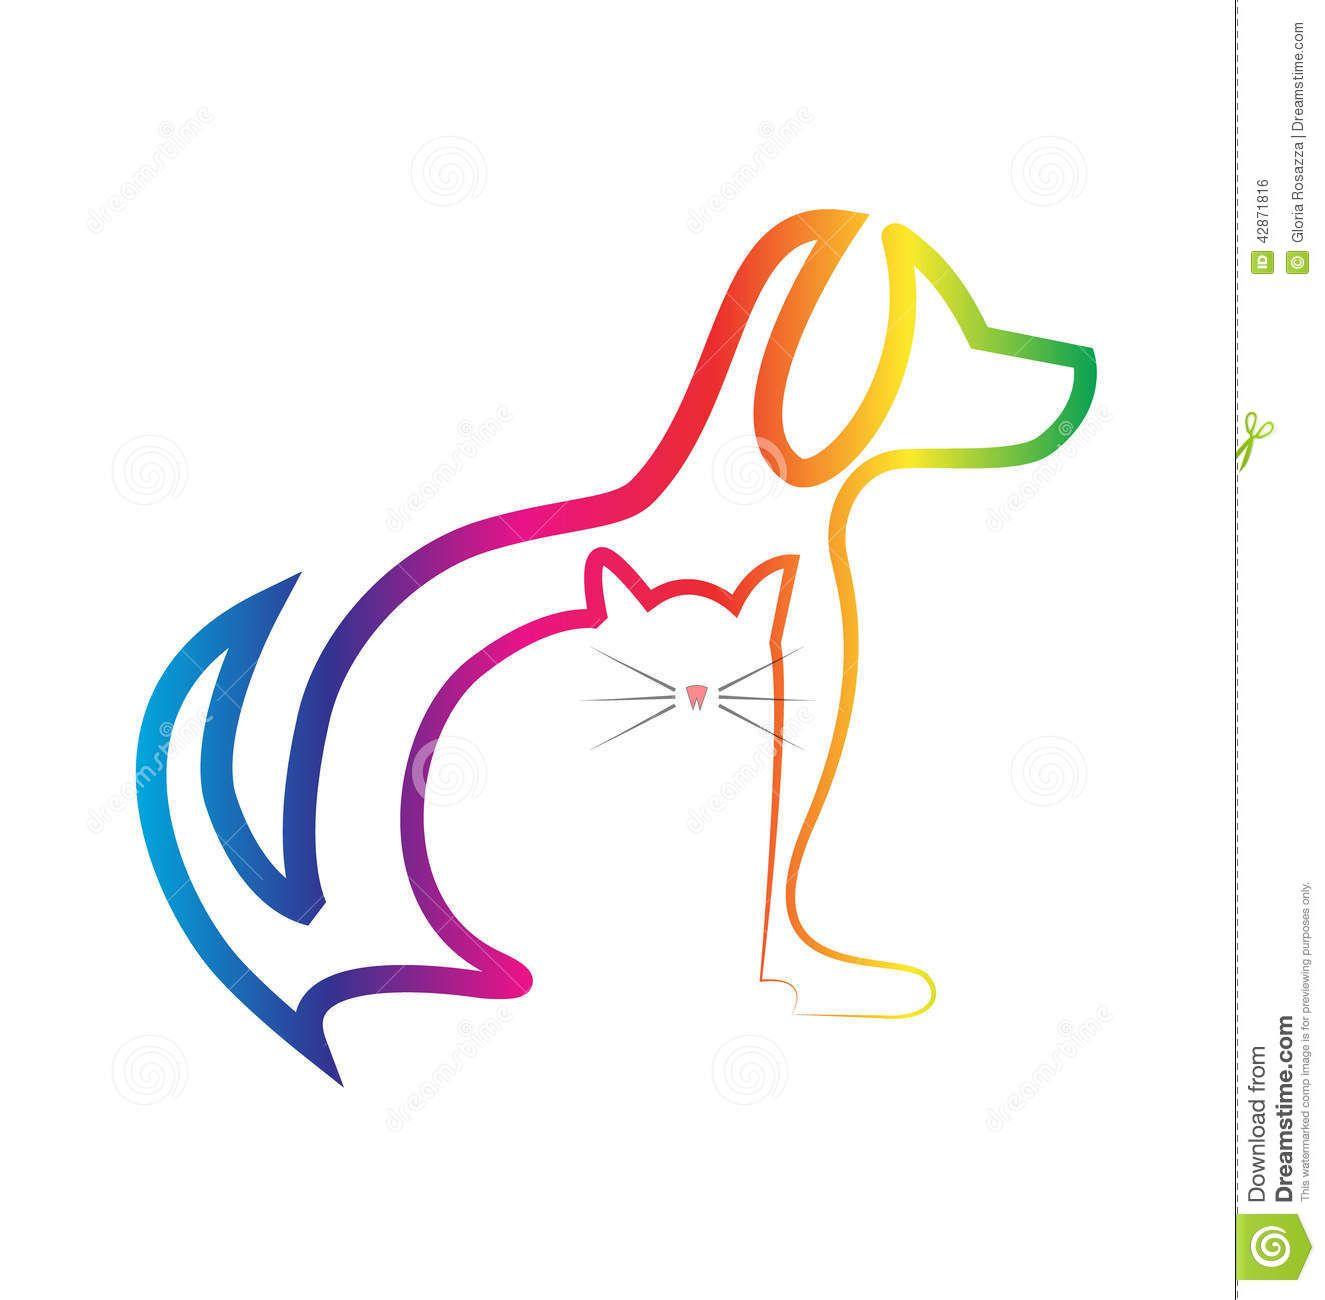 Colorful Dog Logo - Dog and cat Logos